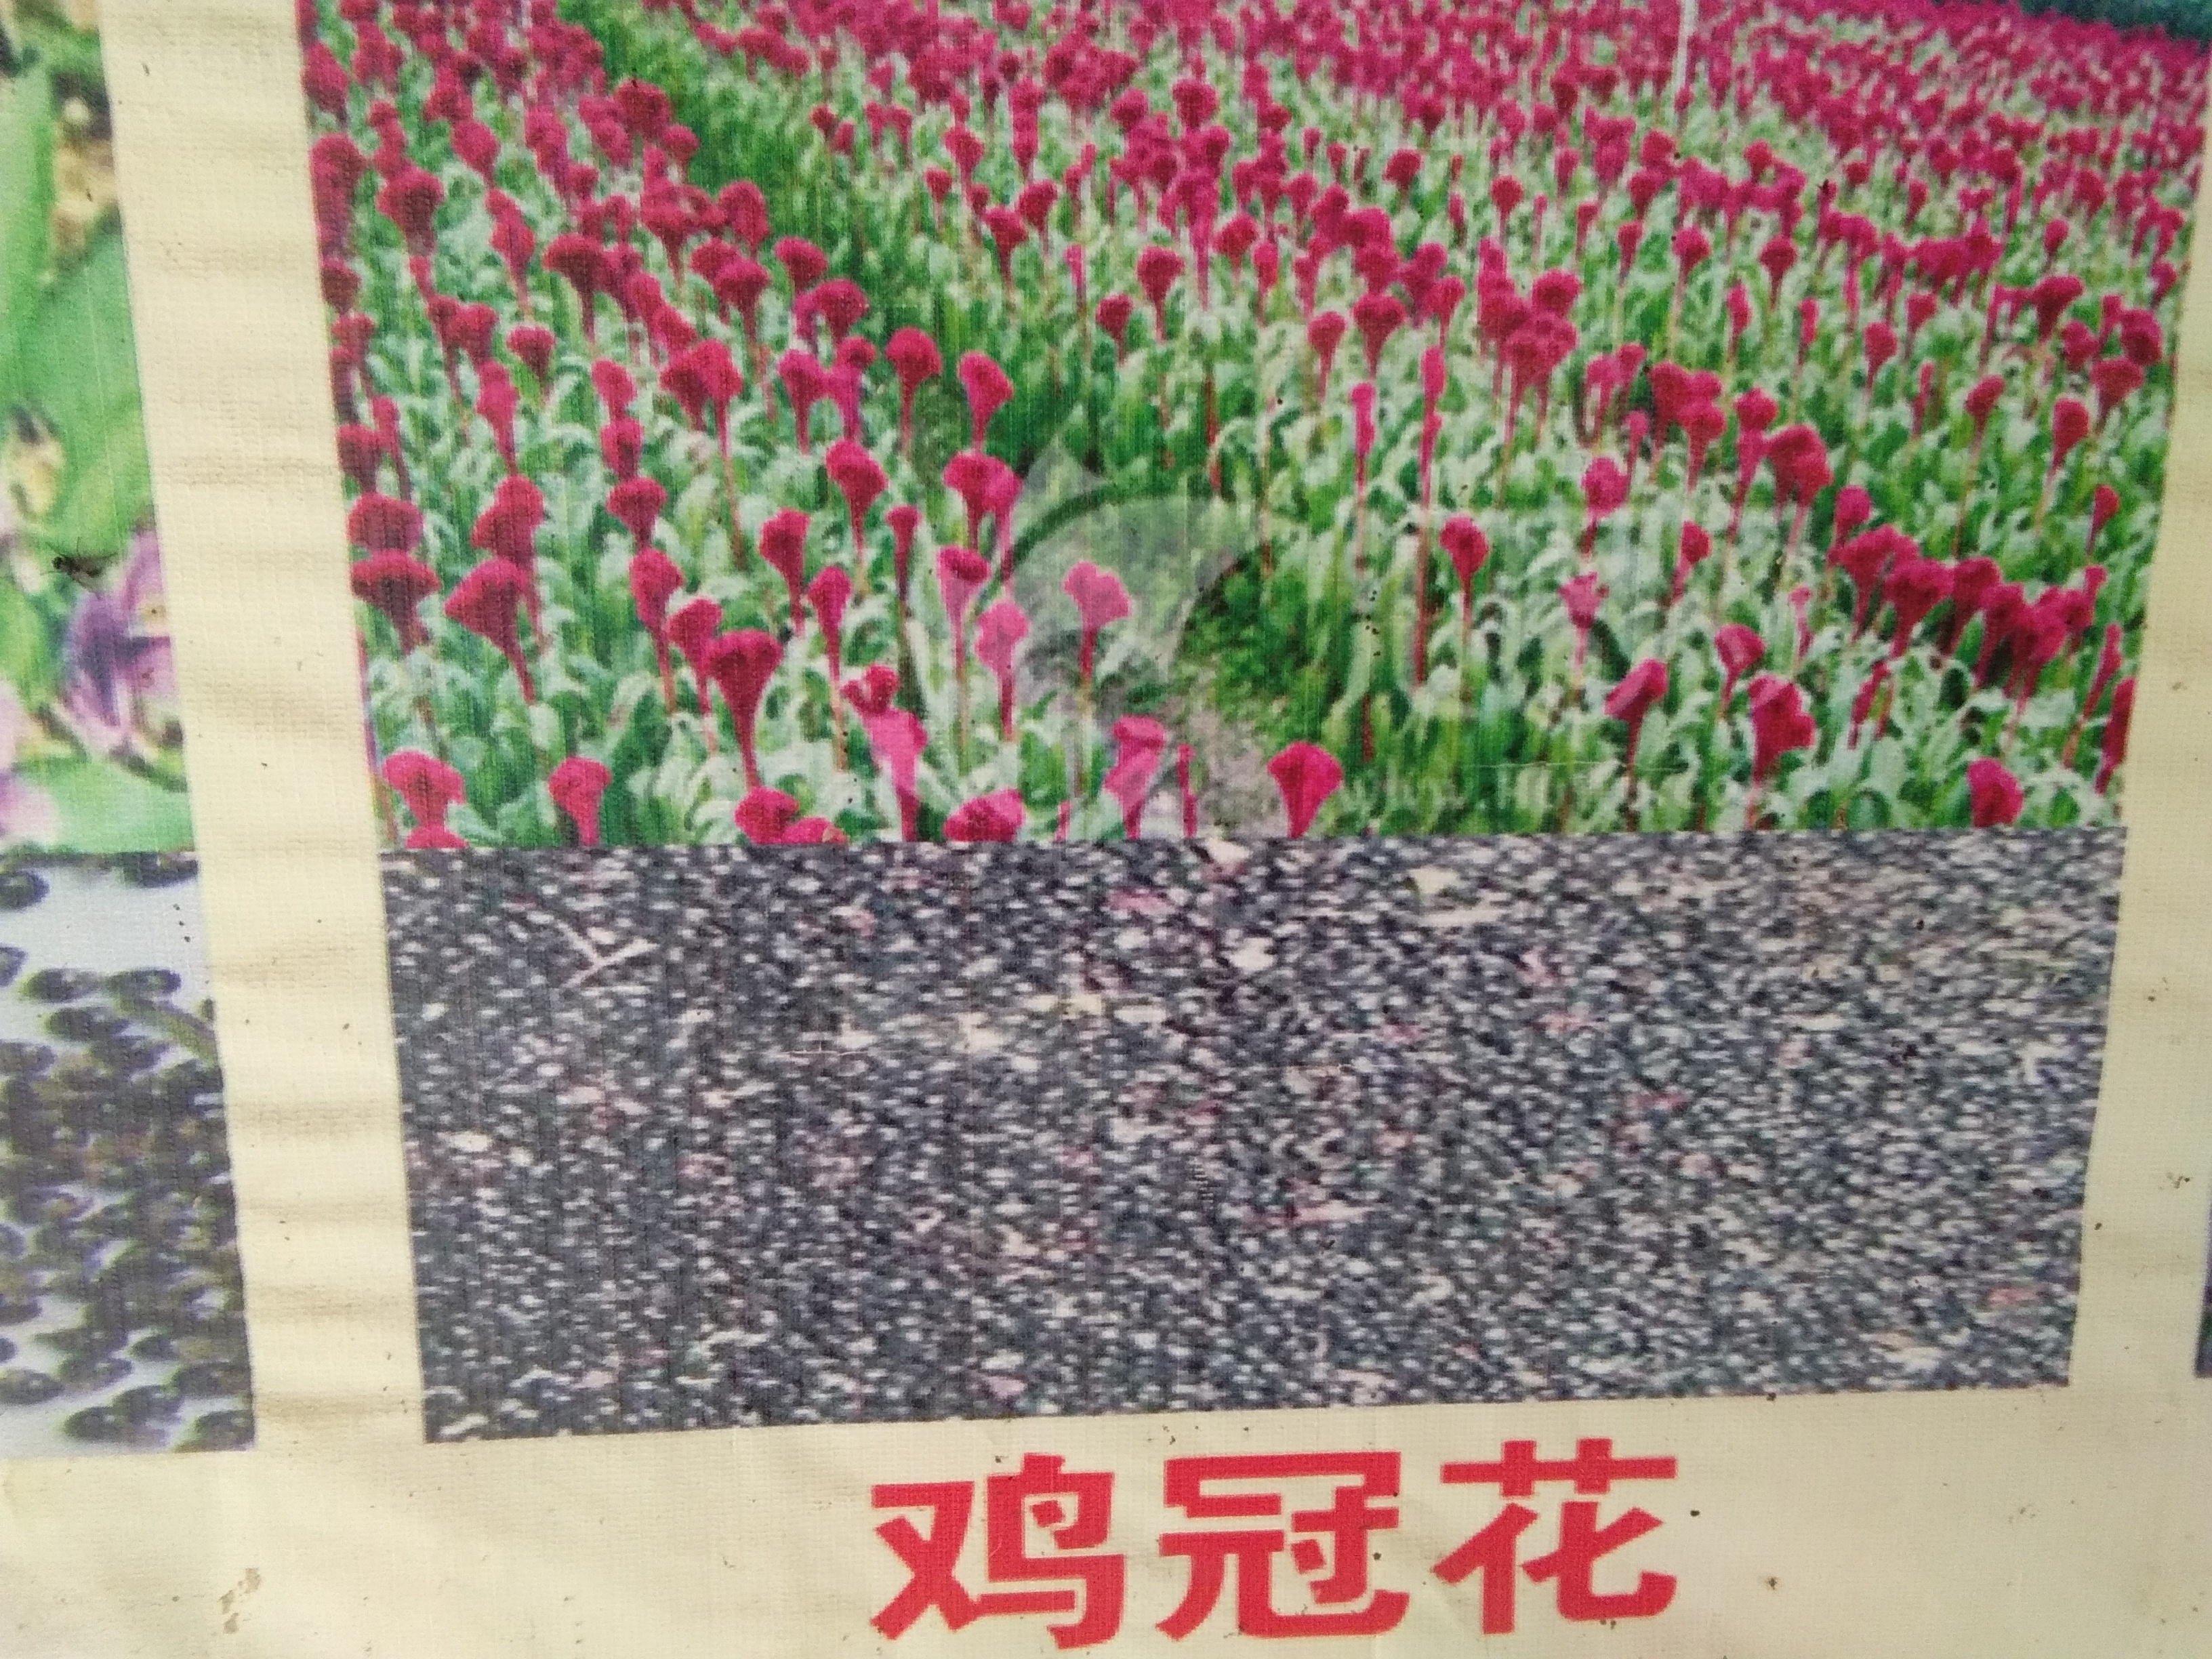 亳州市谯城区张言杰种植农民专业合作社